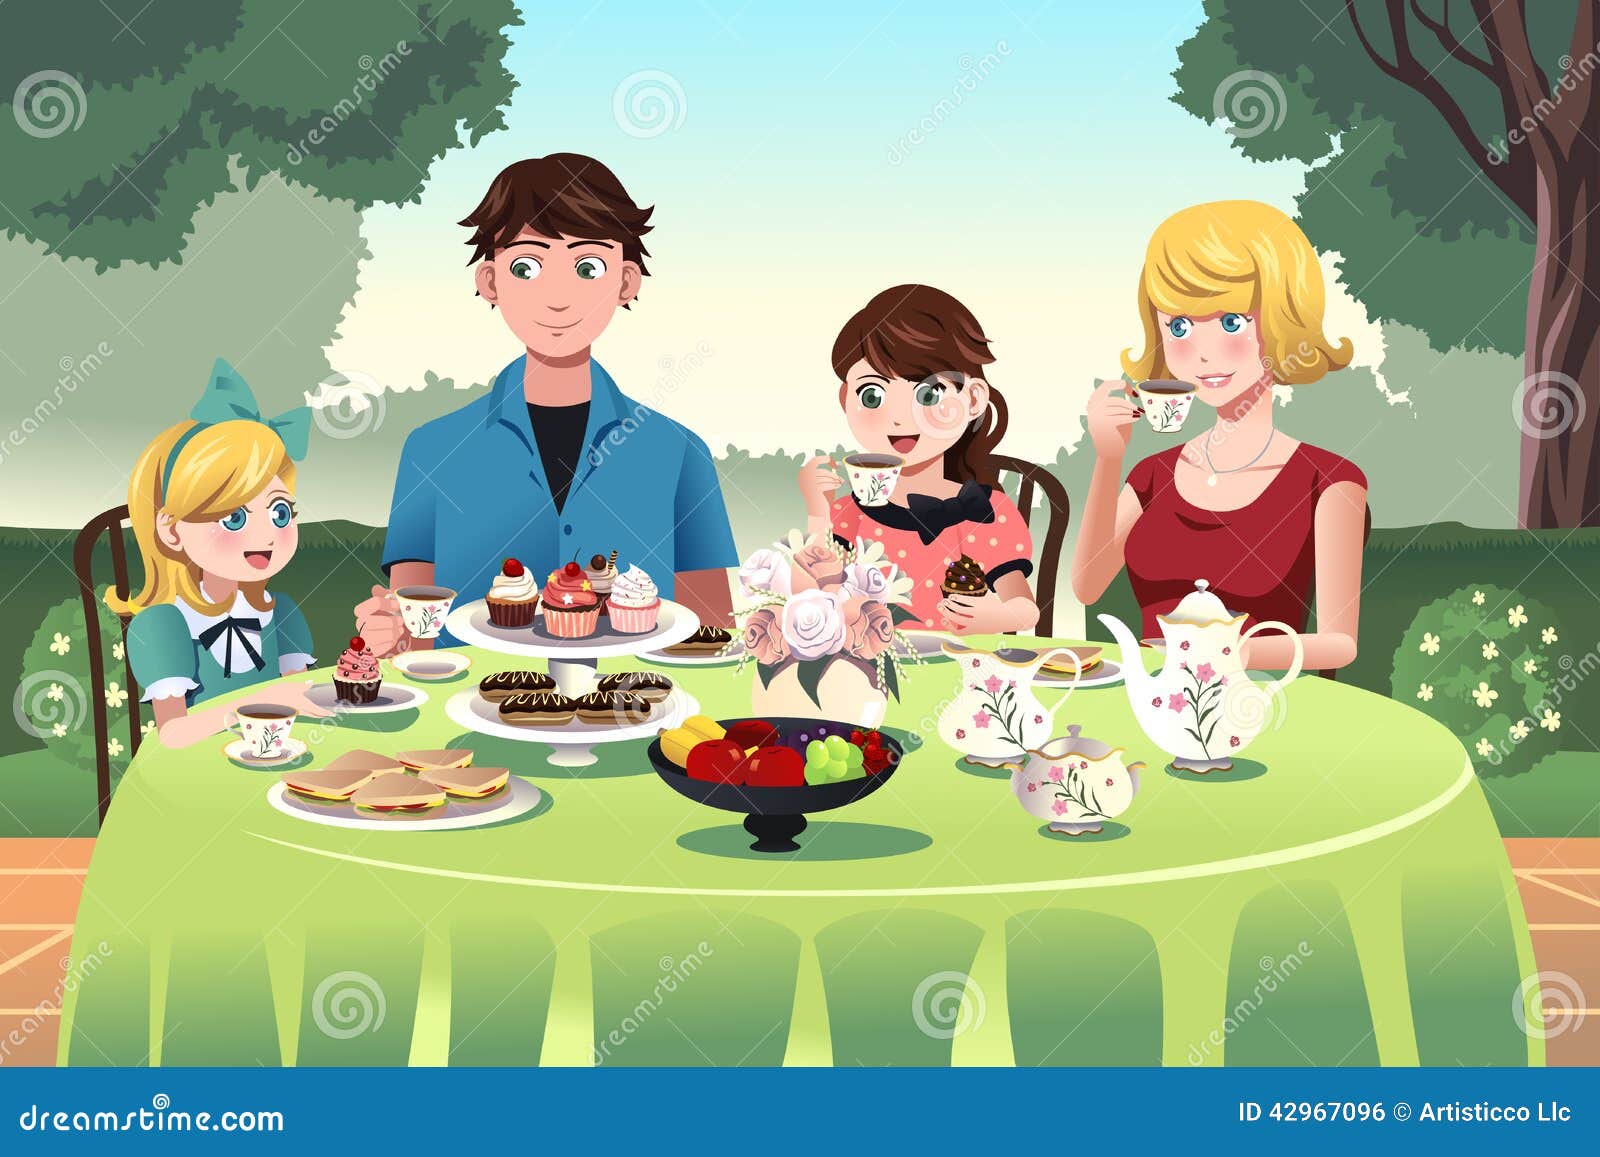 Садимся ужинать. Семья за столом. Семейное чаепитие. Семья за столом чаепитие. Праздничный стол рисунок.